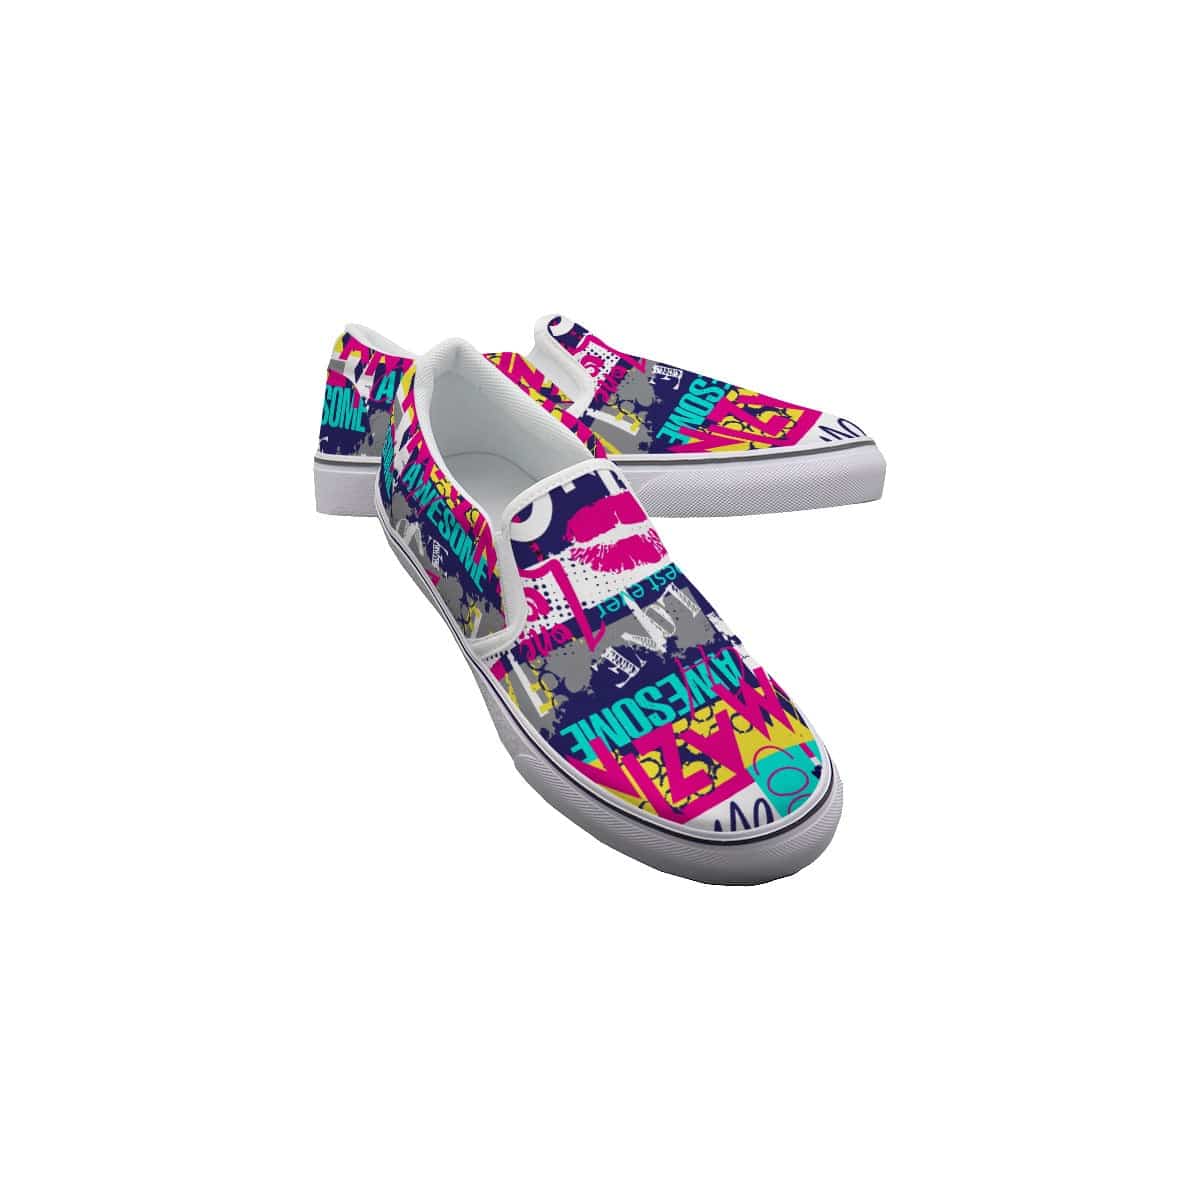 Yoycol White / US6(EUR36) Dazzle Dash - Women's Slip On Sneakers